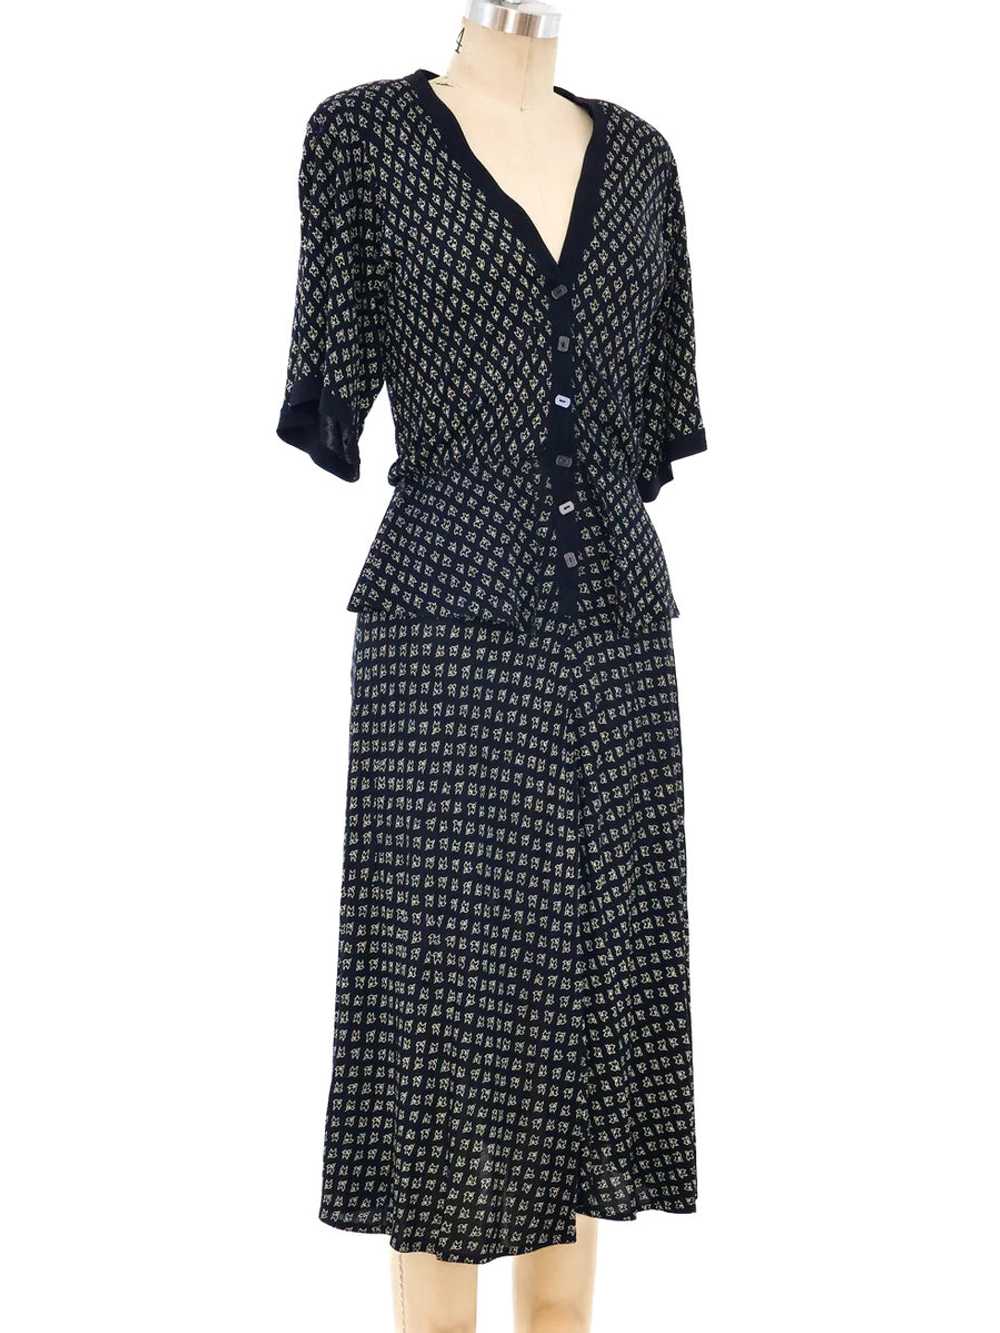 Jean Muir Peplum Jersey Dress - image 2